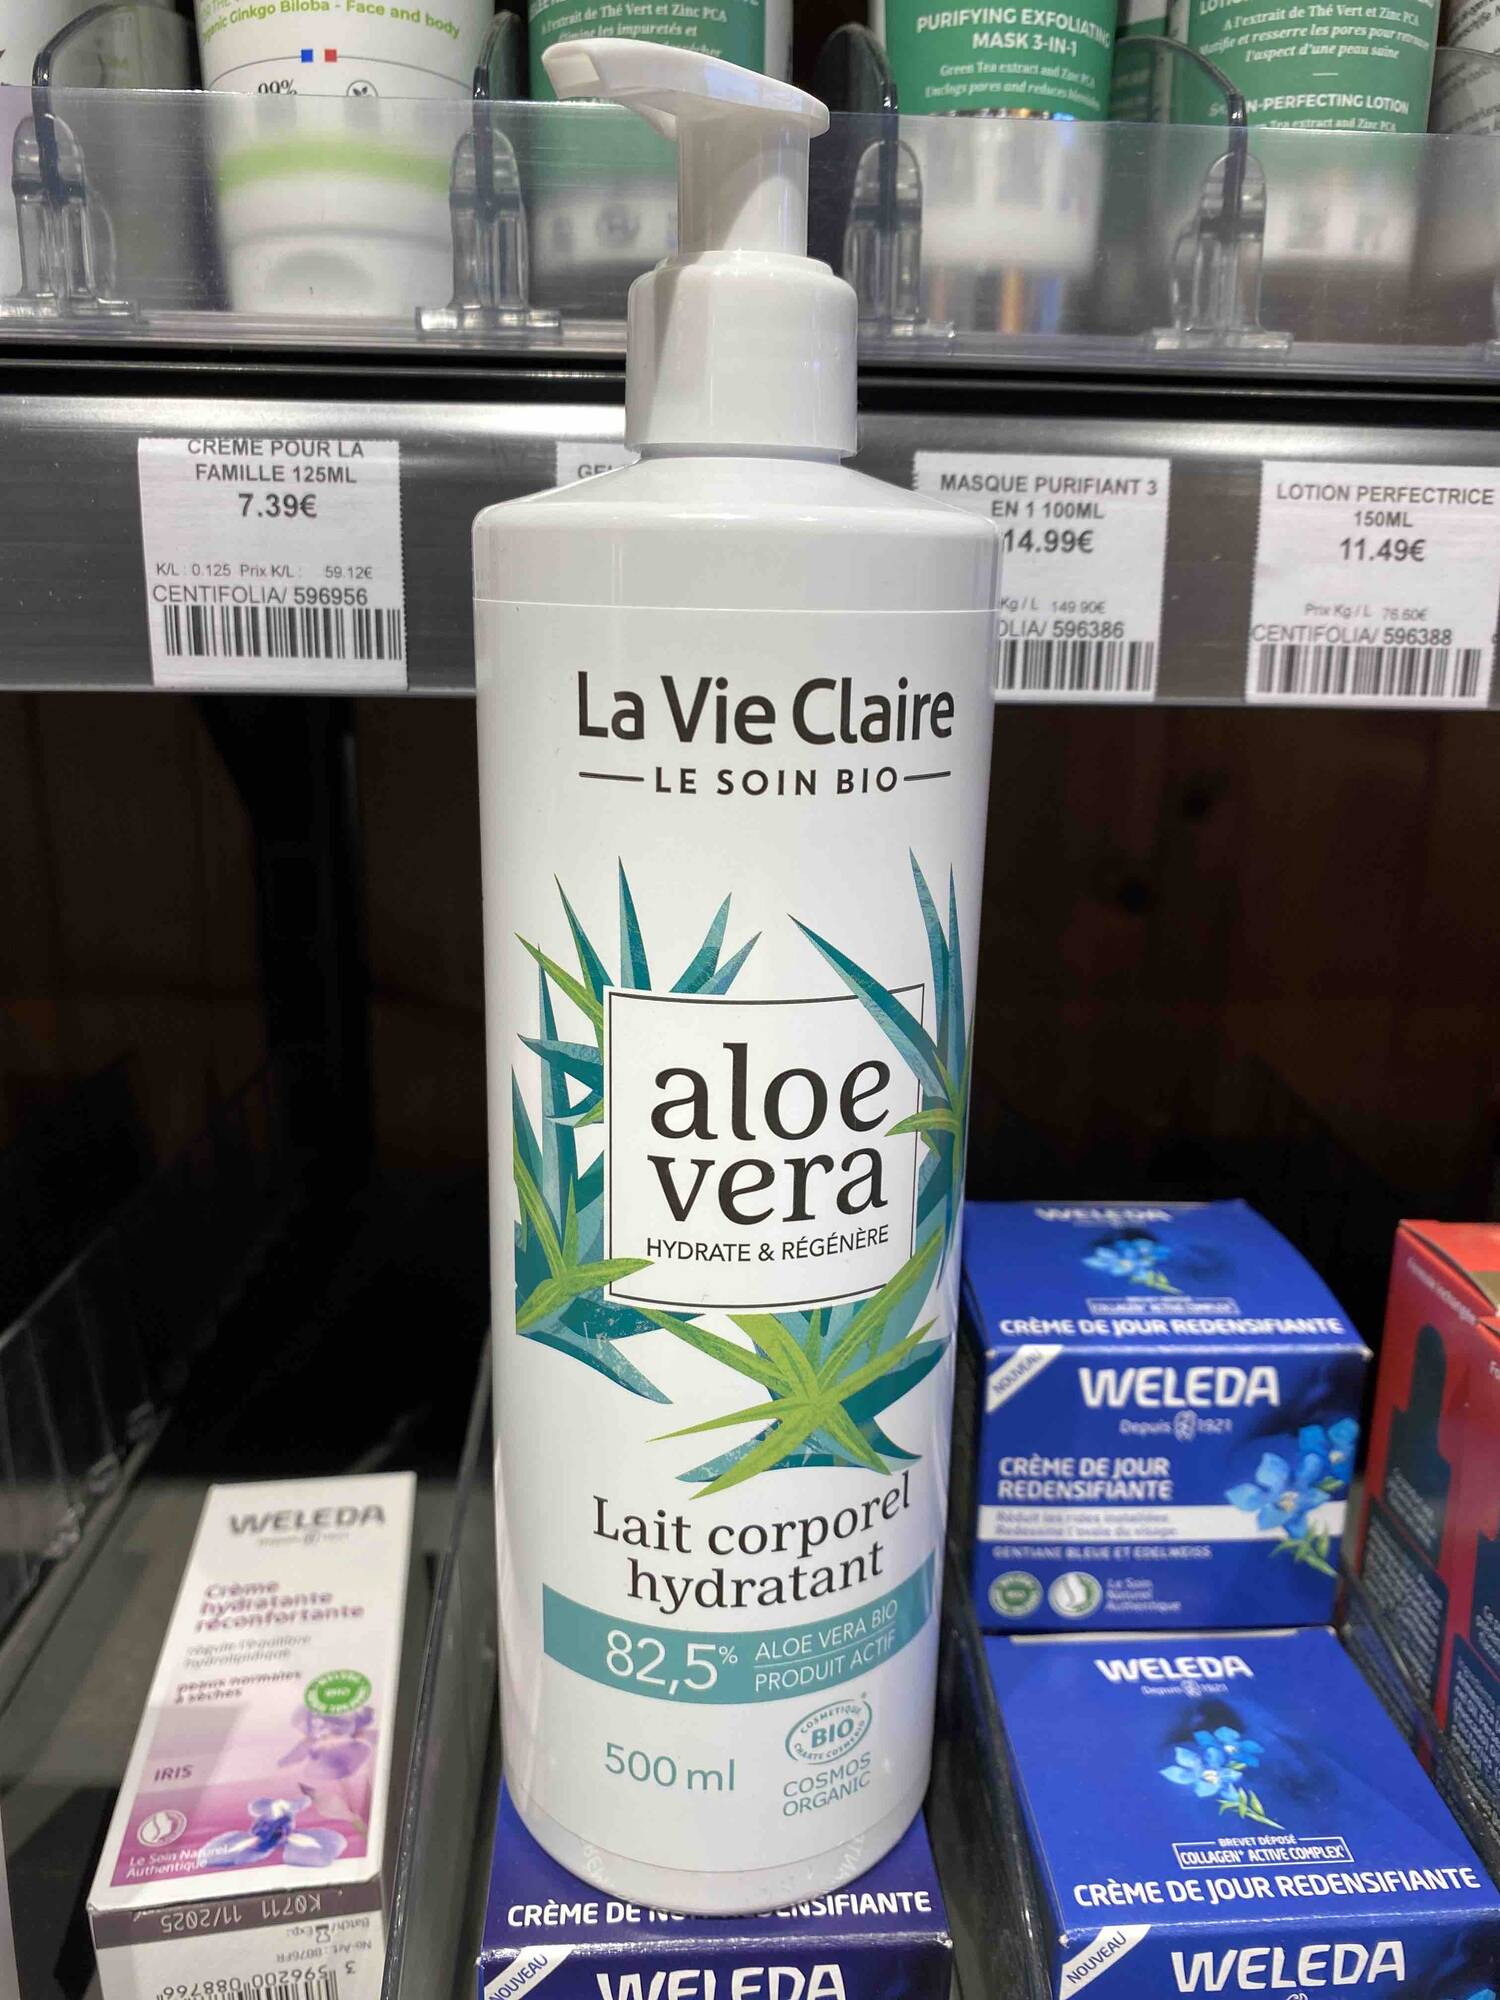 LA VIE CLAIRE - Aloe vera - Lait corporel hydratant